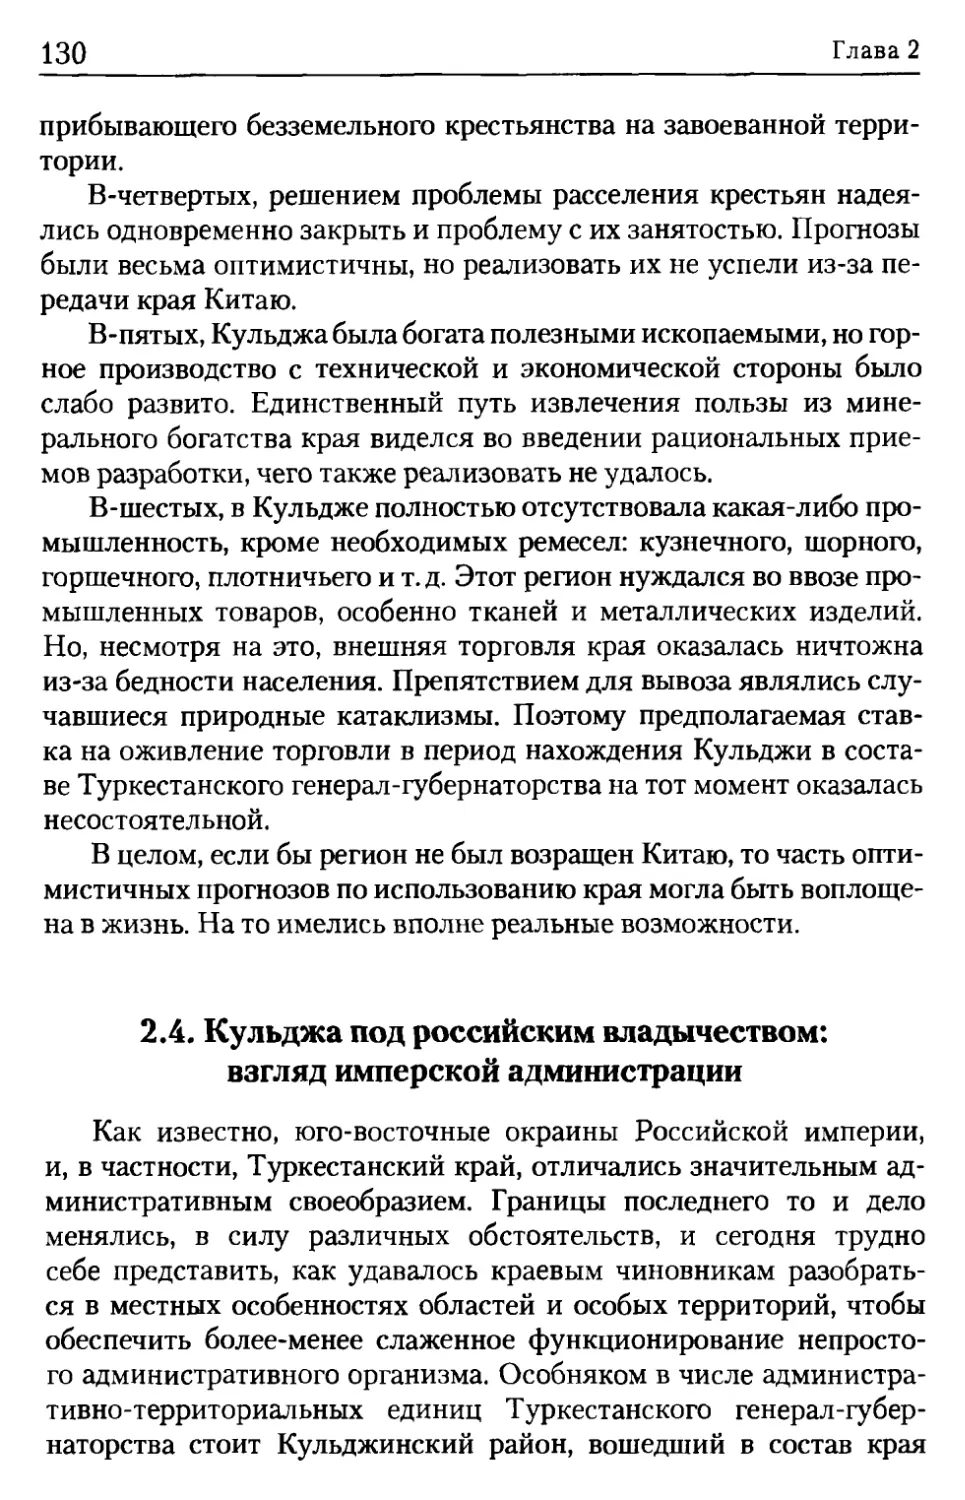 2.4. Кульджа под российским владычеством: взгляд имперской администрации